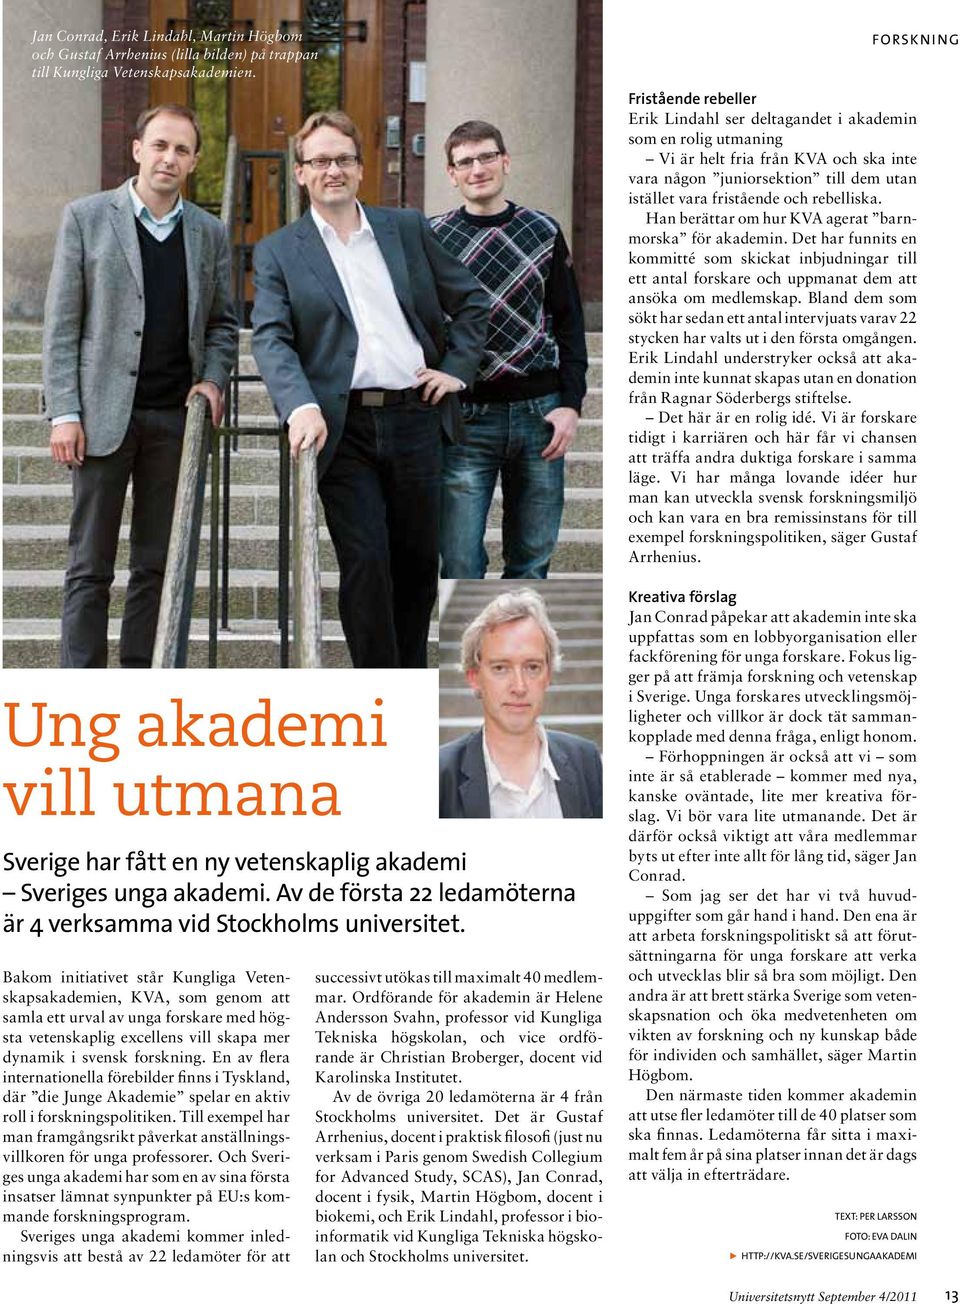 Bakom initiativet står Kungliga Vetenskapsakademien, KVA, som genom att samla ett urval av unga forskare med högsta vetenskaplig excellens vill skapa mer dynamik i svensk forskning.